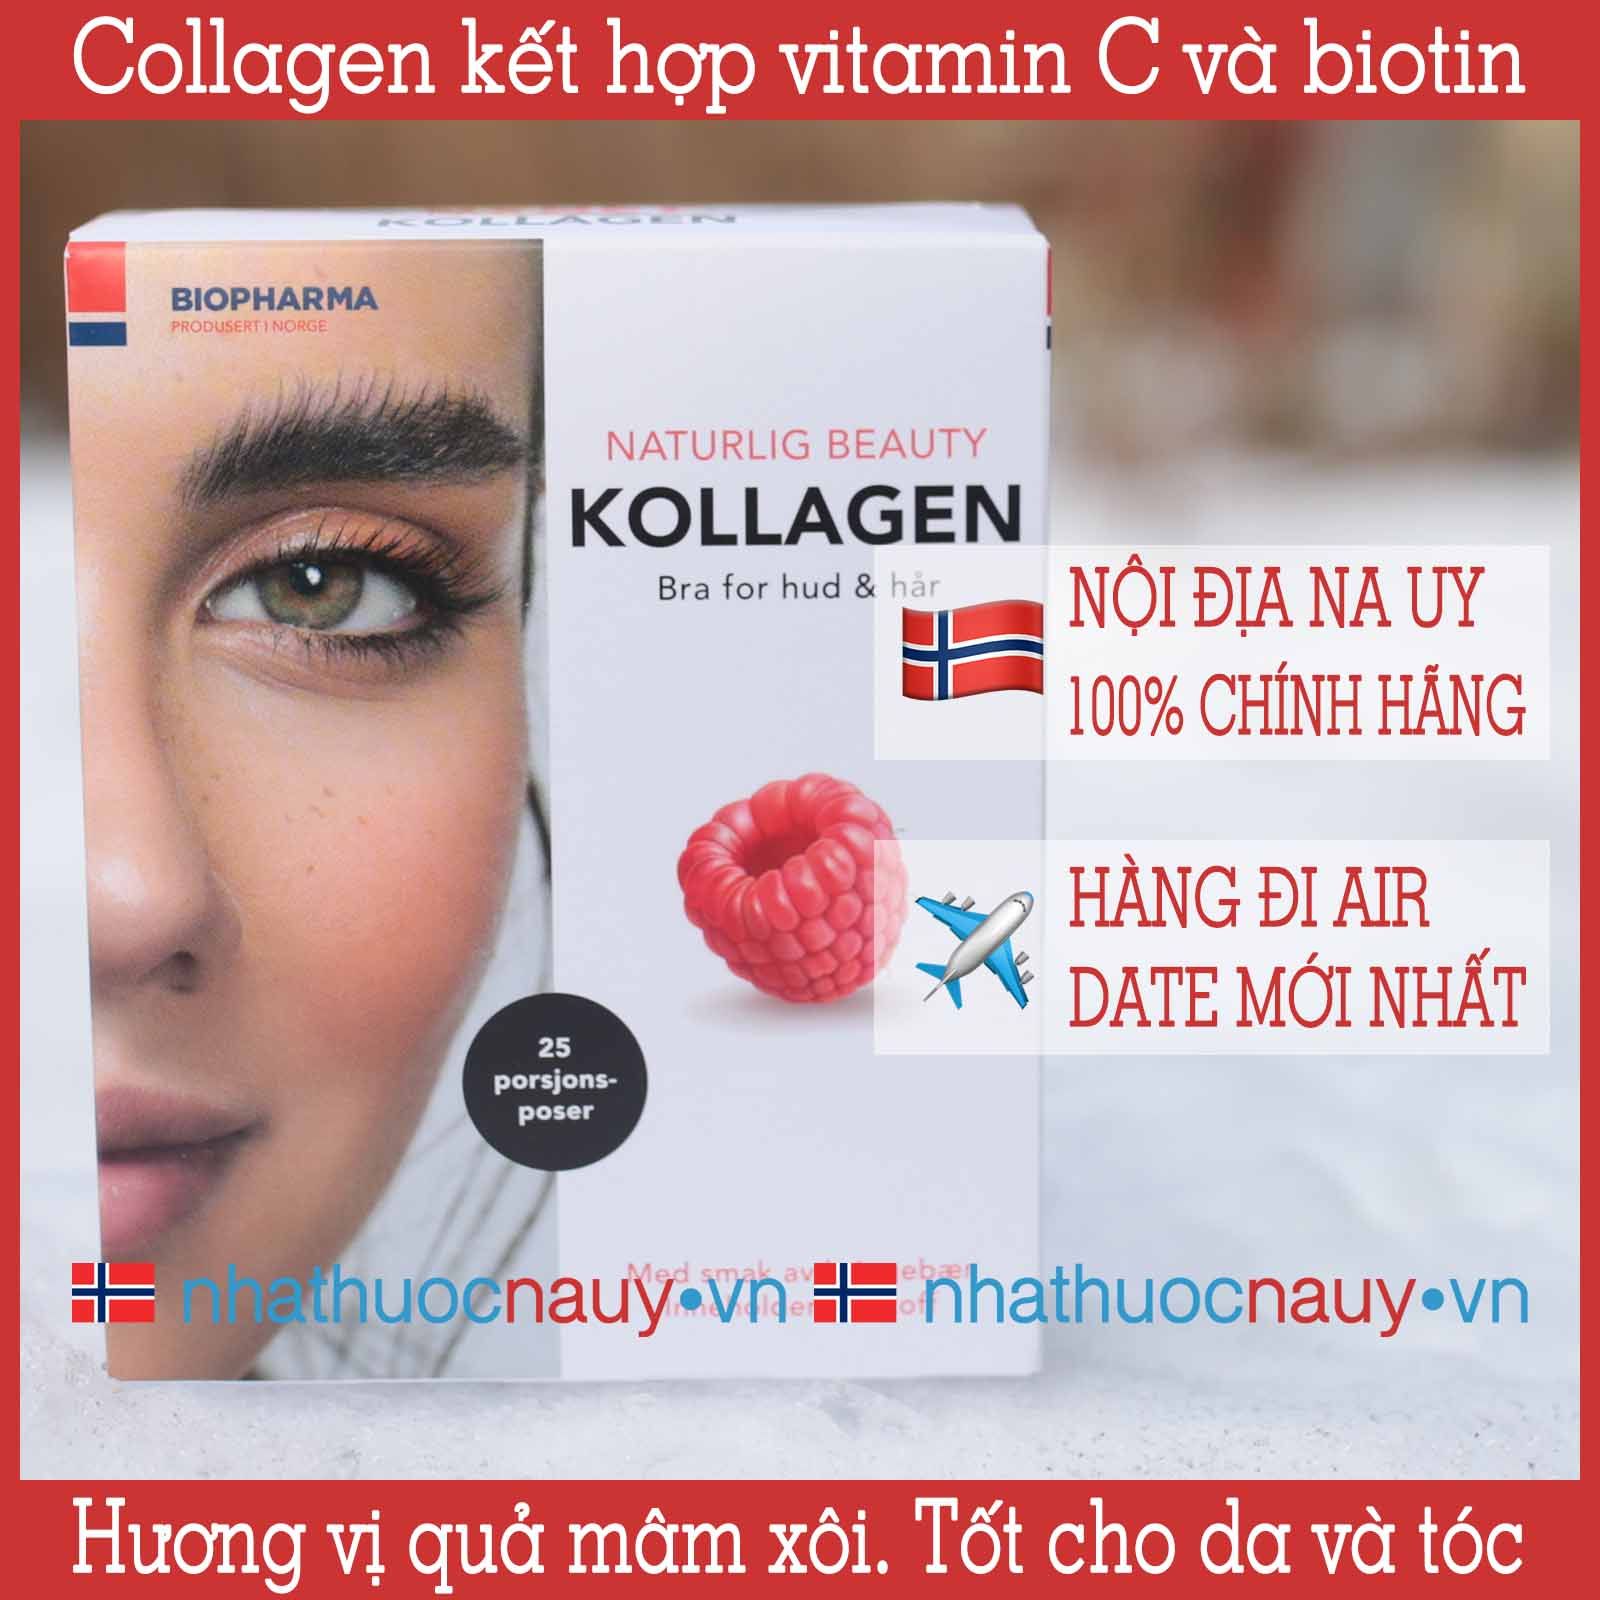 Chính hãng] Biopharma Kollagen kết hợp vitamin C và biotin từ Na Uy –  nhathuocnauy.vn